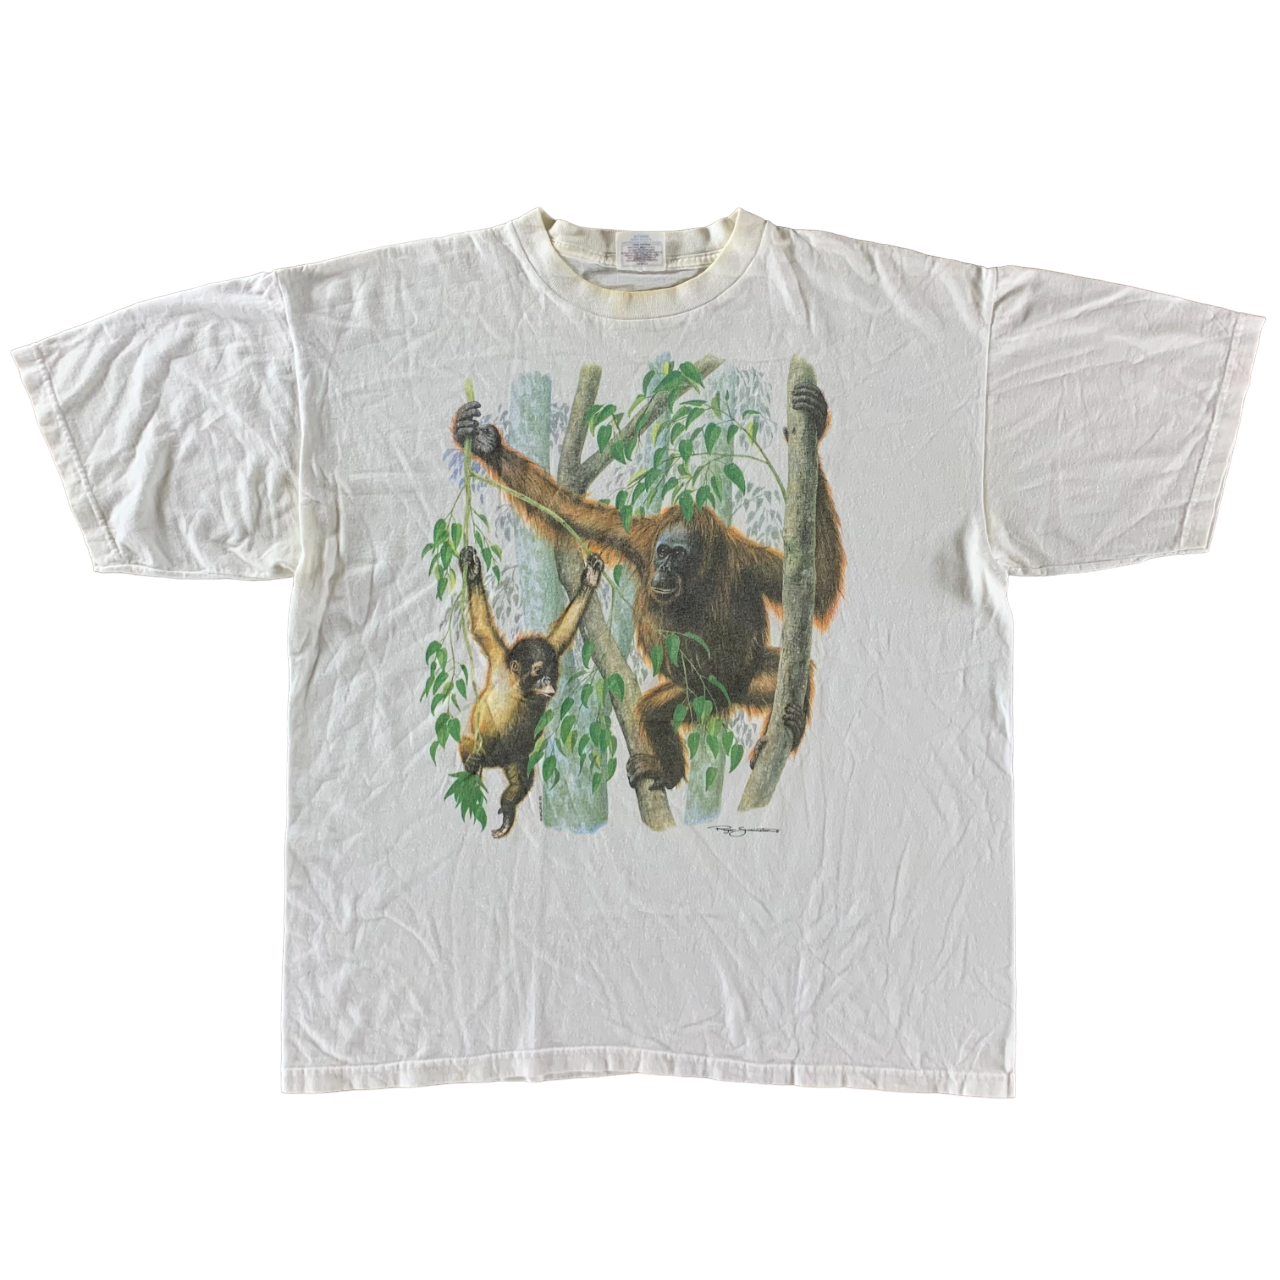 Vintage 1990s Chimpanzee T-shirt size XL